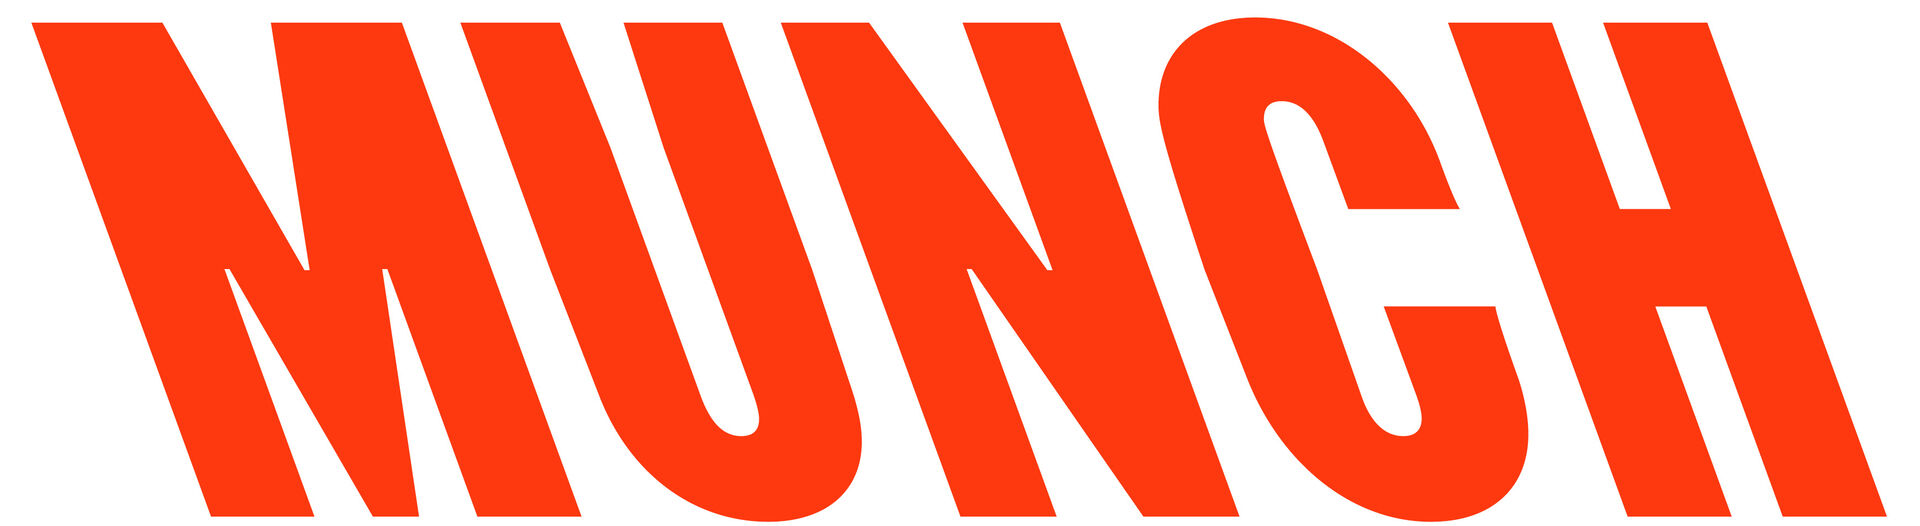 MUNCH logo